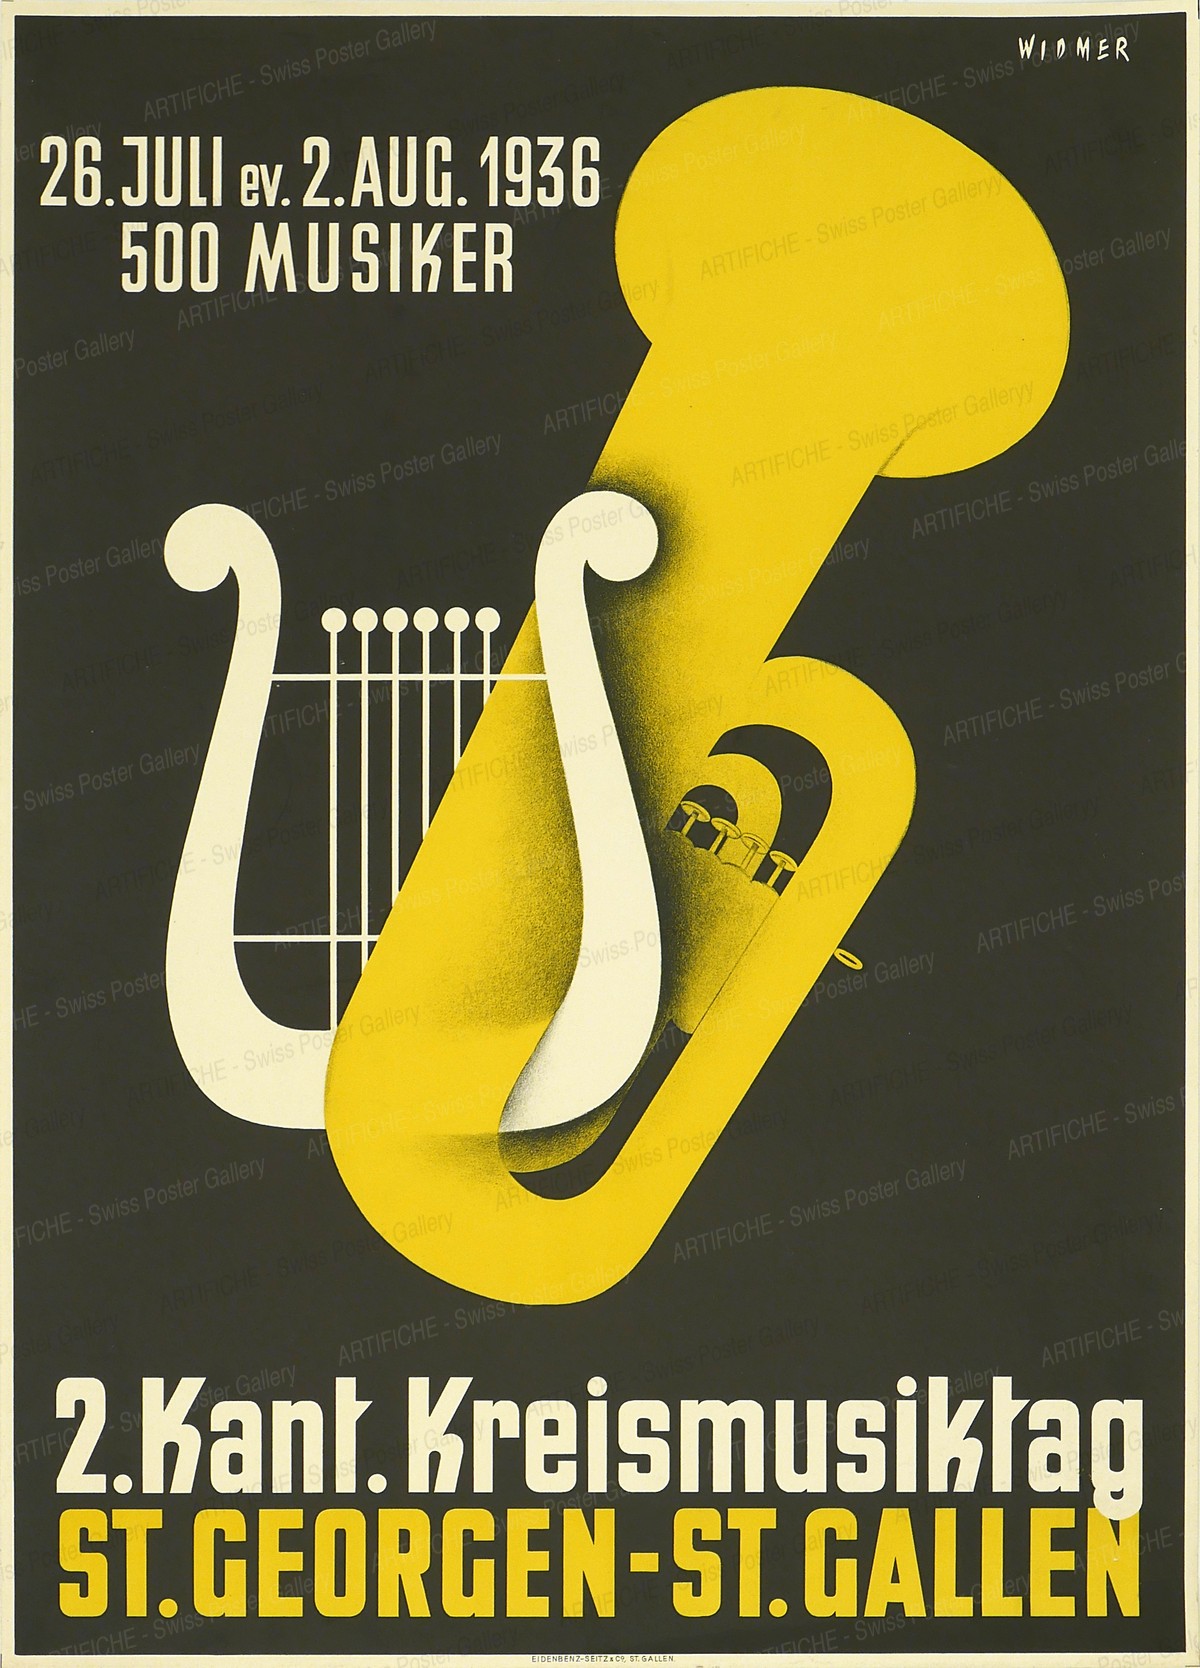 2. Kant. Kreismusiktag St. Georgen – St. Gallen – 26. Juli ev. 2. Aug. 1936 – 500 Musiker, Alfred Widmer